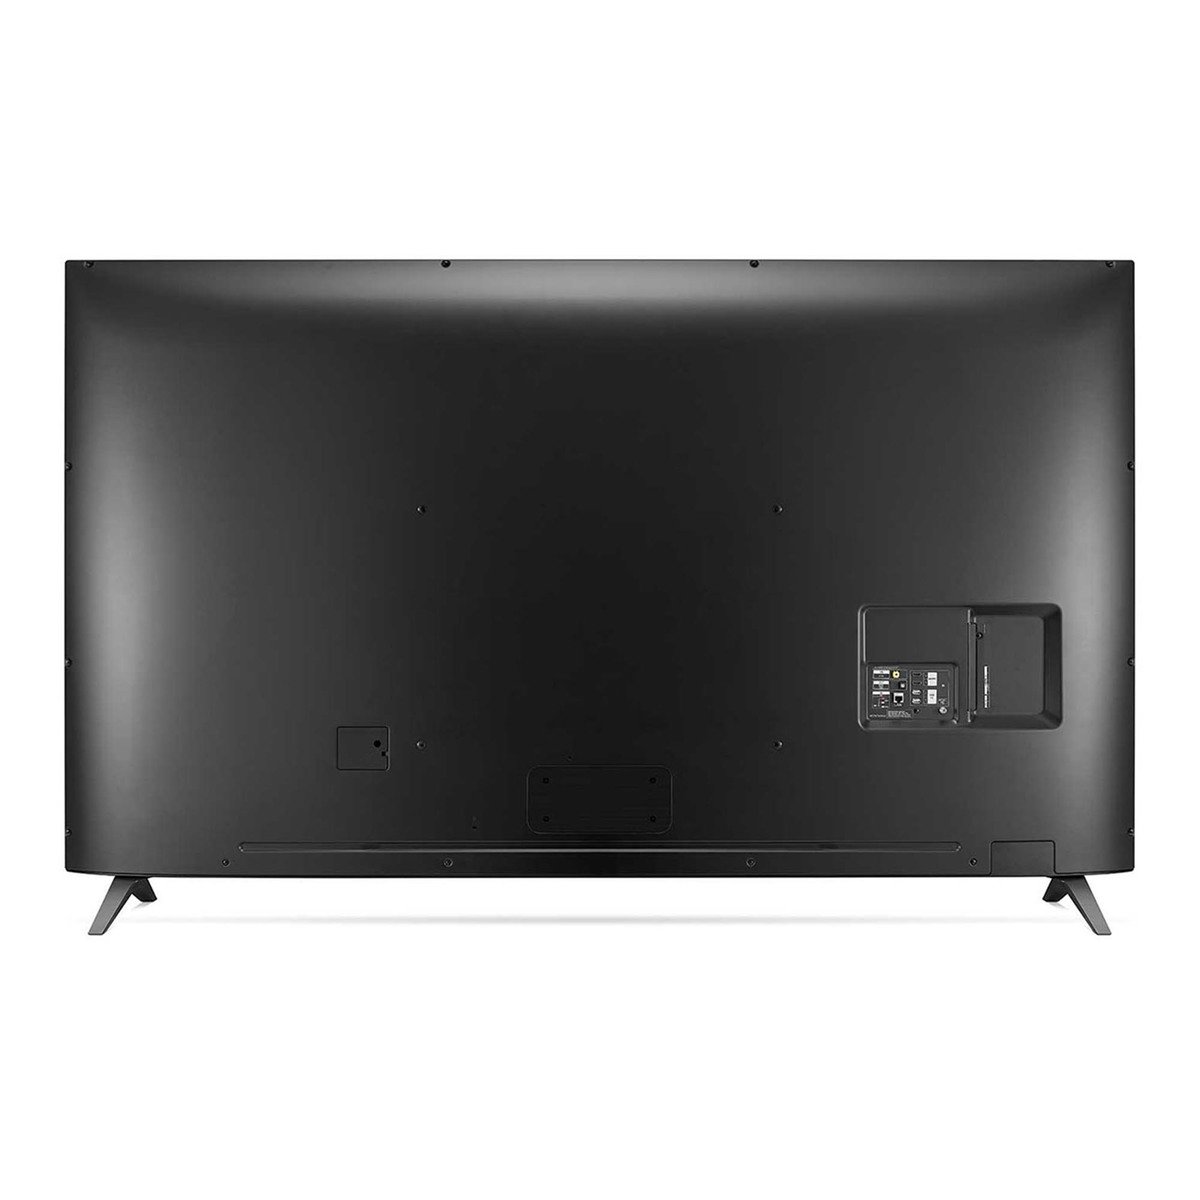 LG 4K Ultra HD Smart LED TV 86UM7580PVA 86"